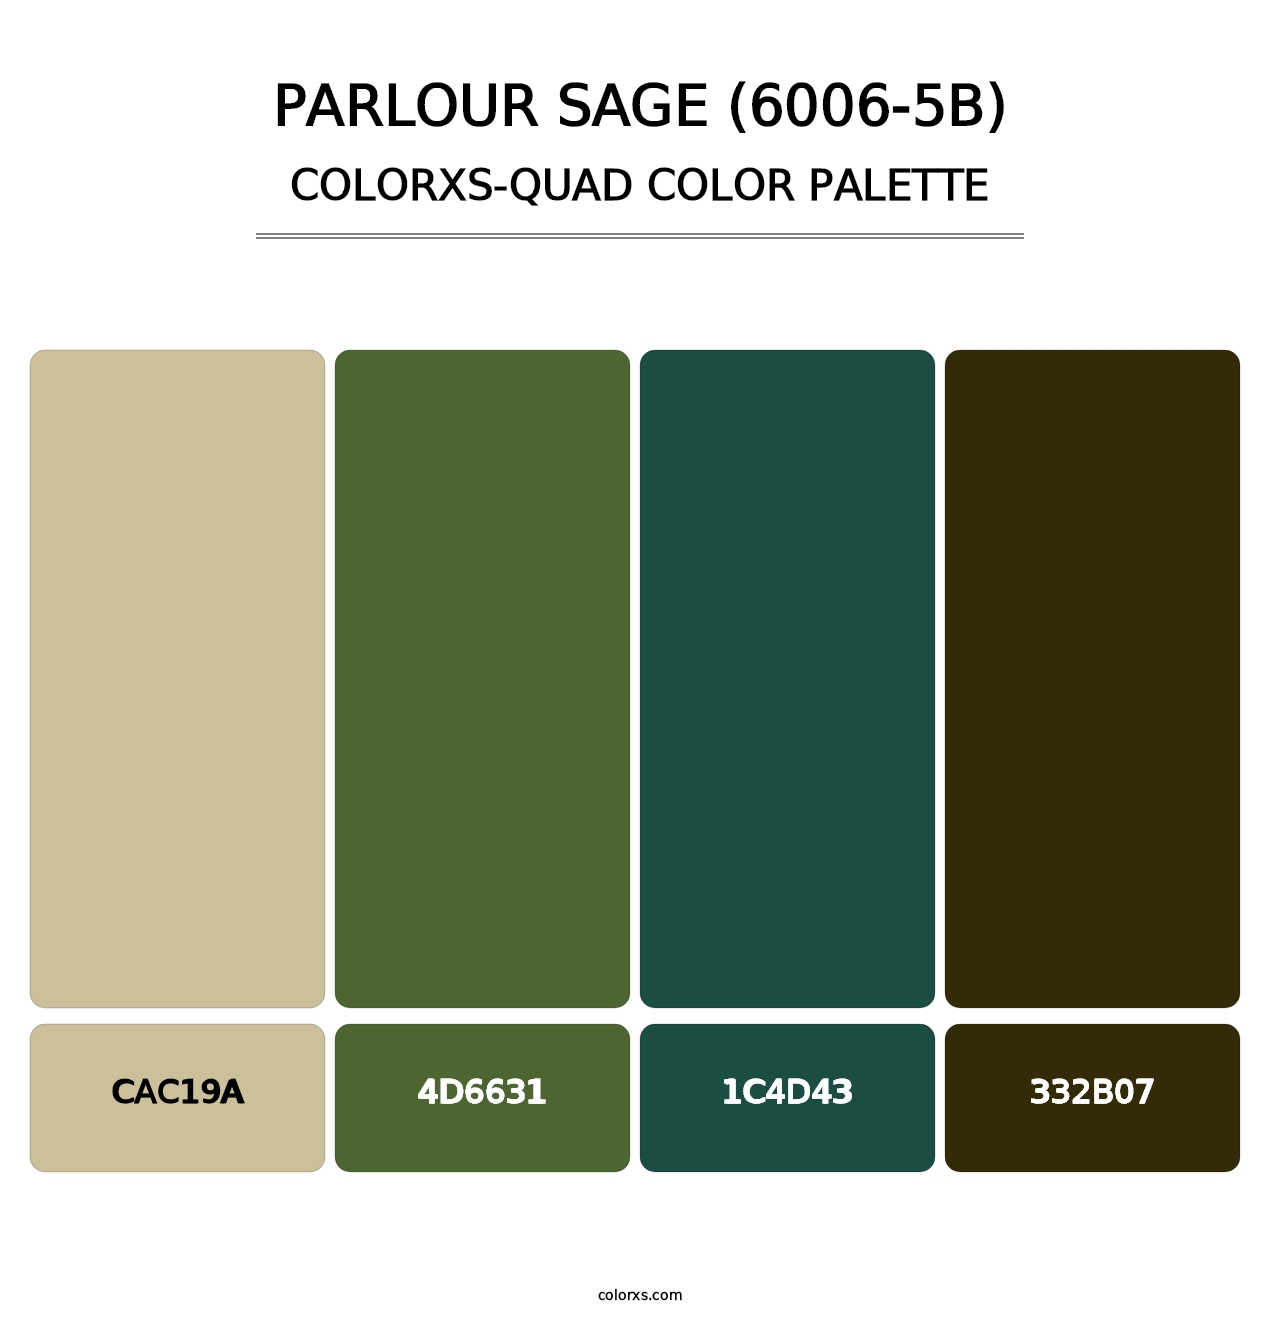 Parlour Sage (6006-5B) - Colorxs Quad Palette